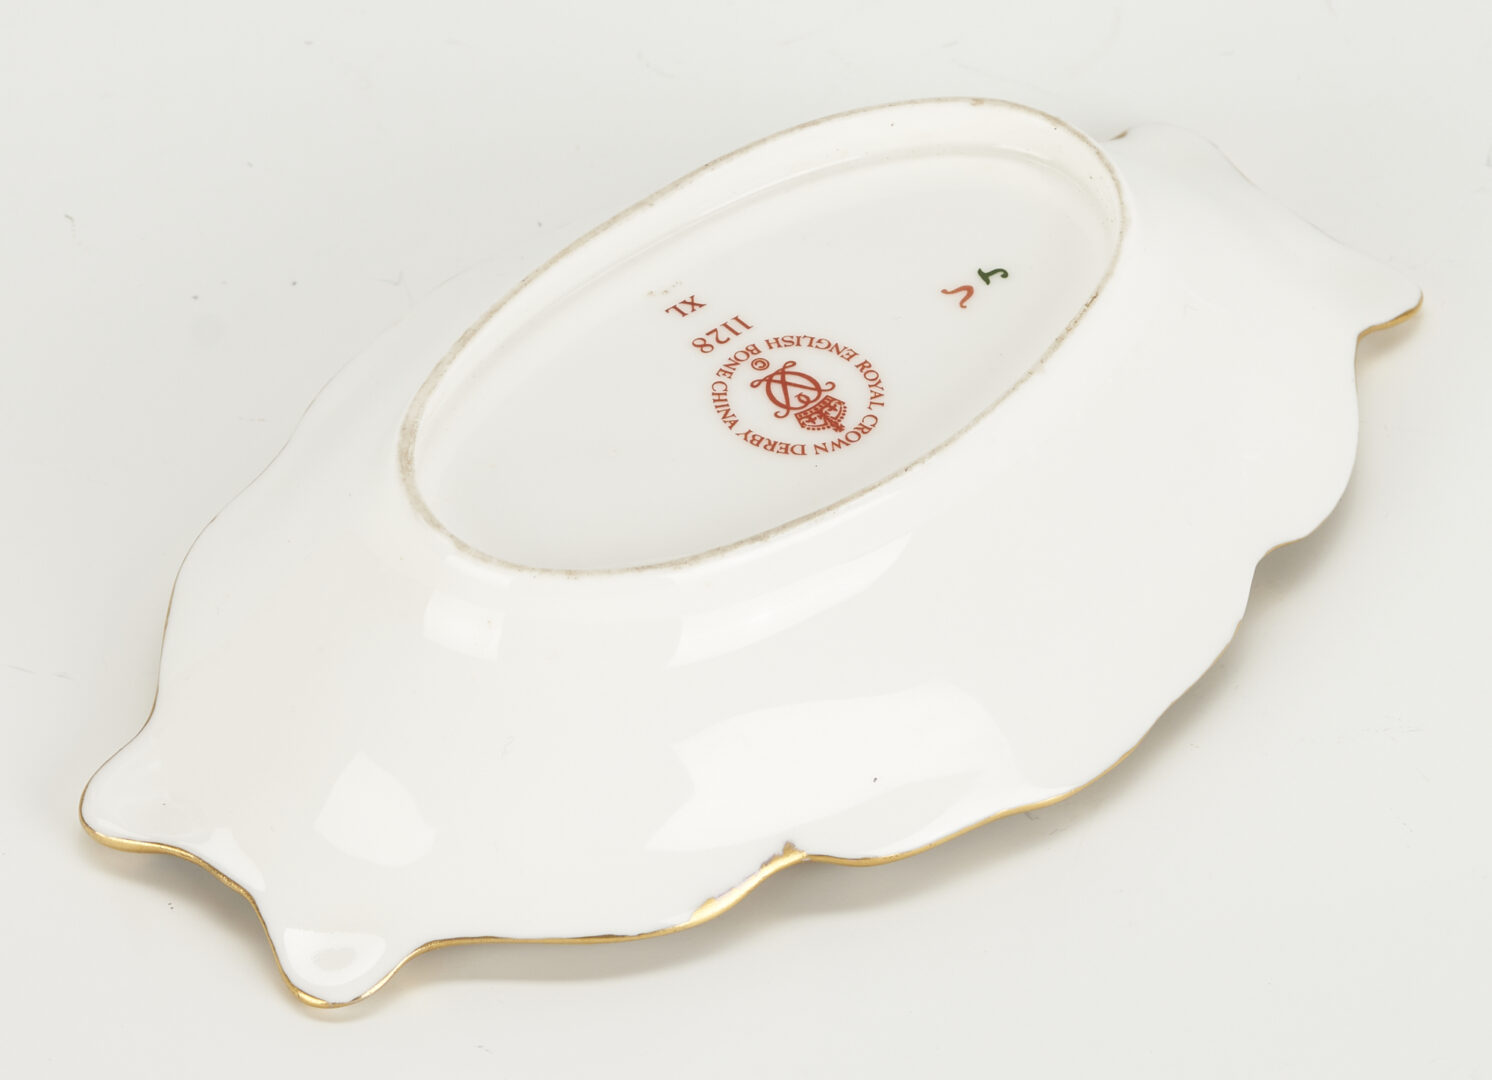 Lot 258: 14 Royal Crown Derby Porcelain Items, incl. Davis Collamore